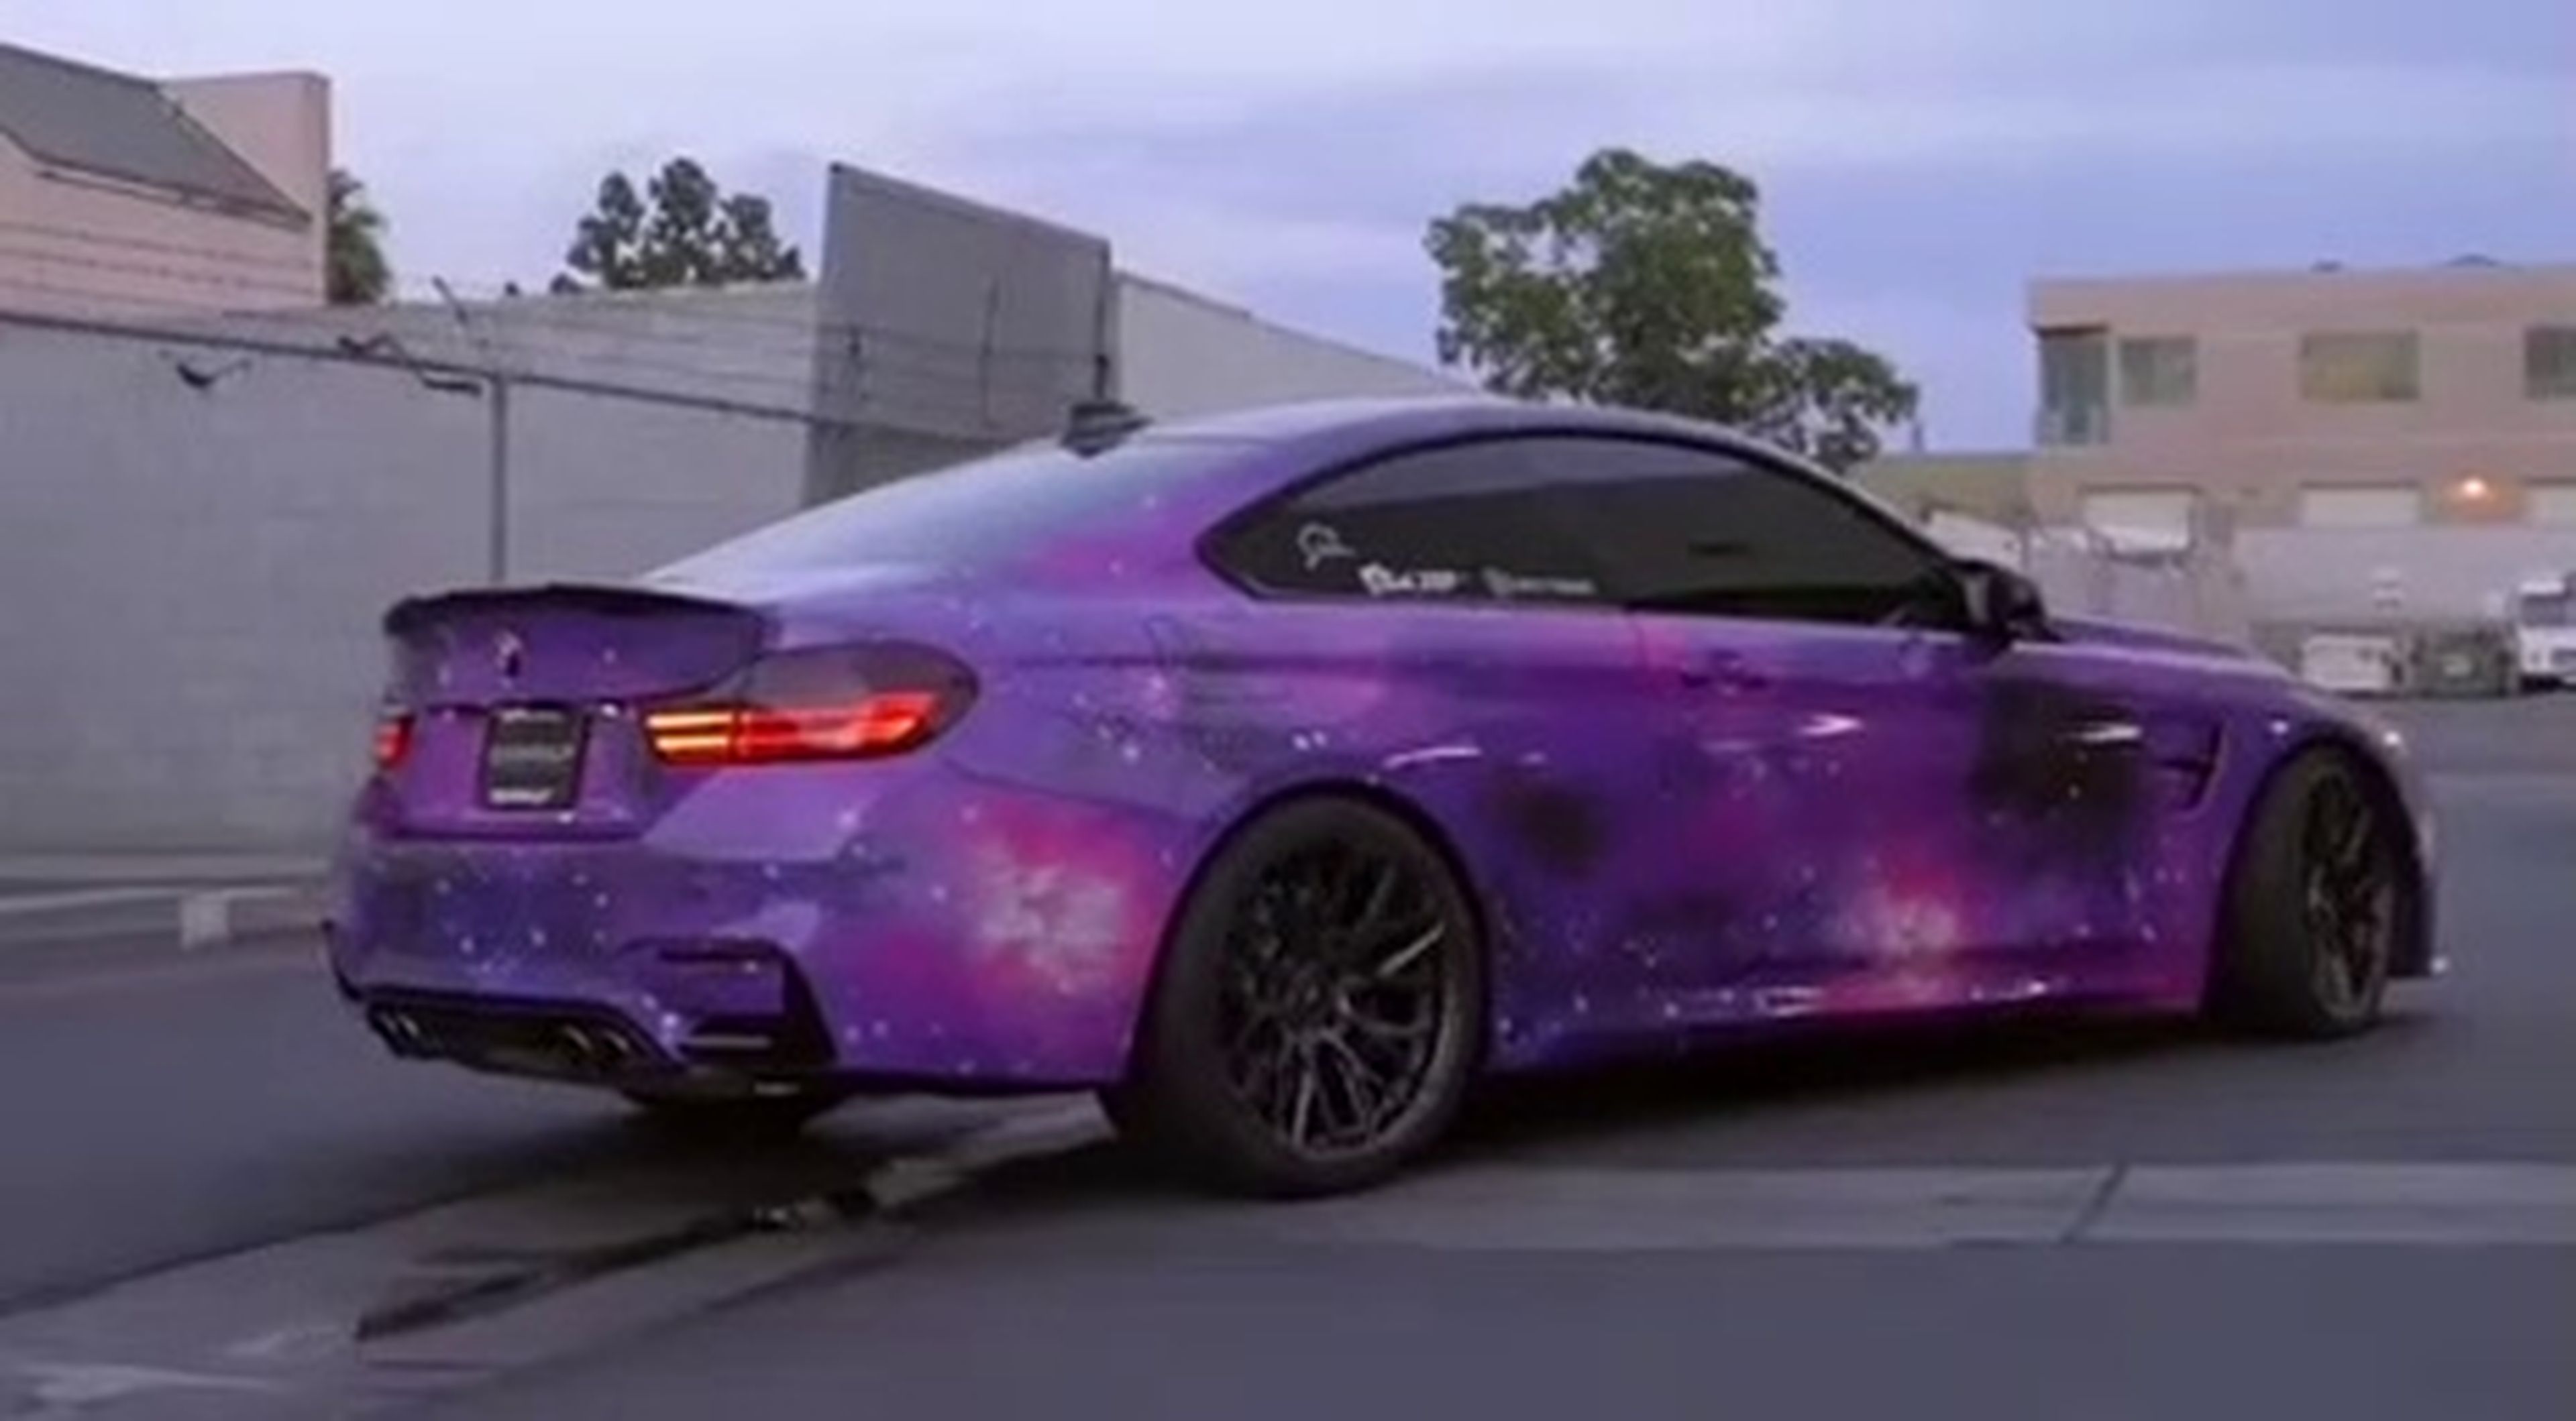 VÍDEO: ¿Te parece hortera o te encanta? Mira el color de este BMW M4 Competition